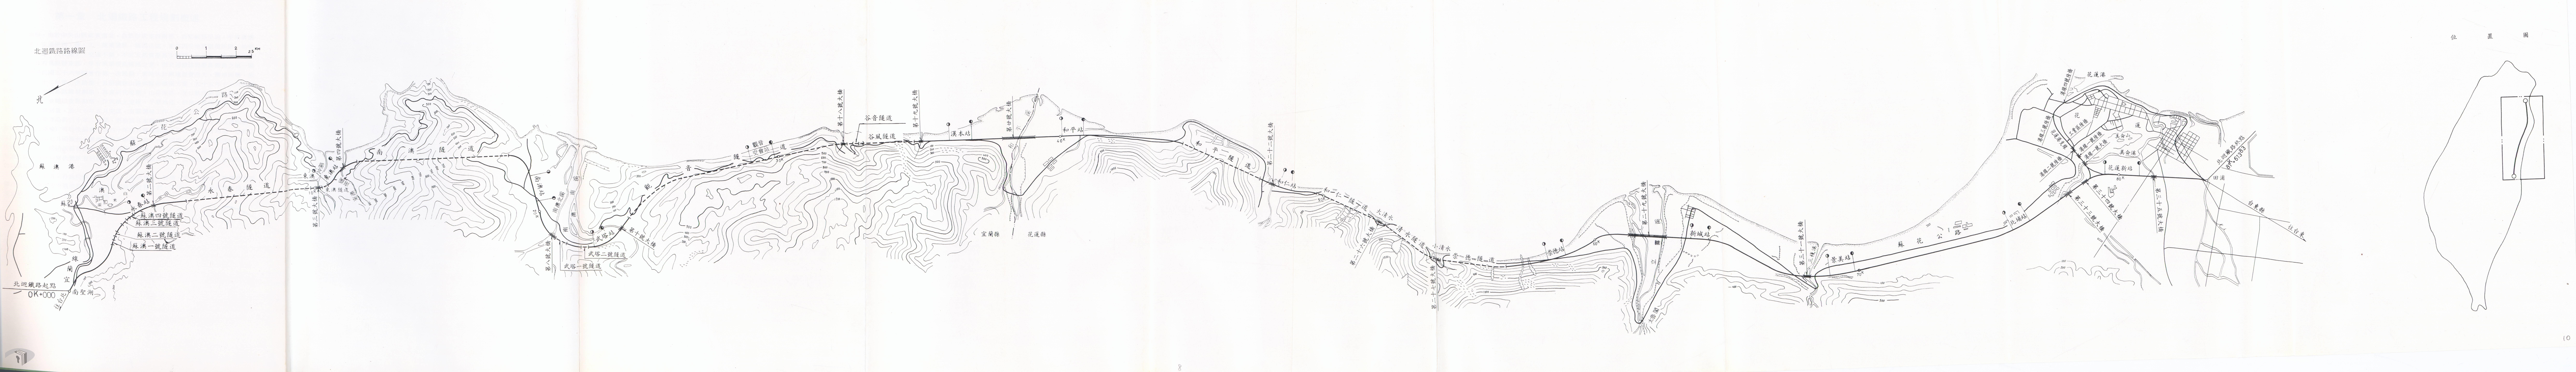 圖16 北迴鐵路路線圖